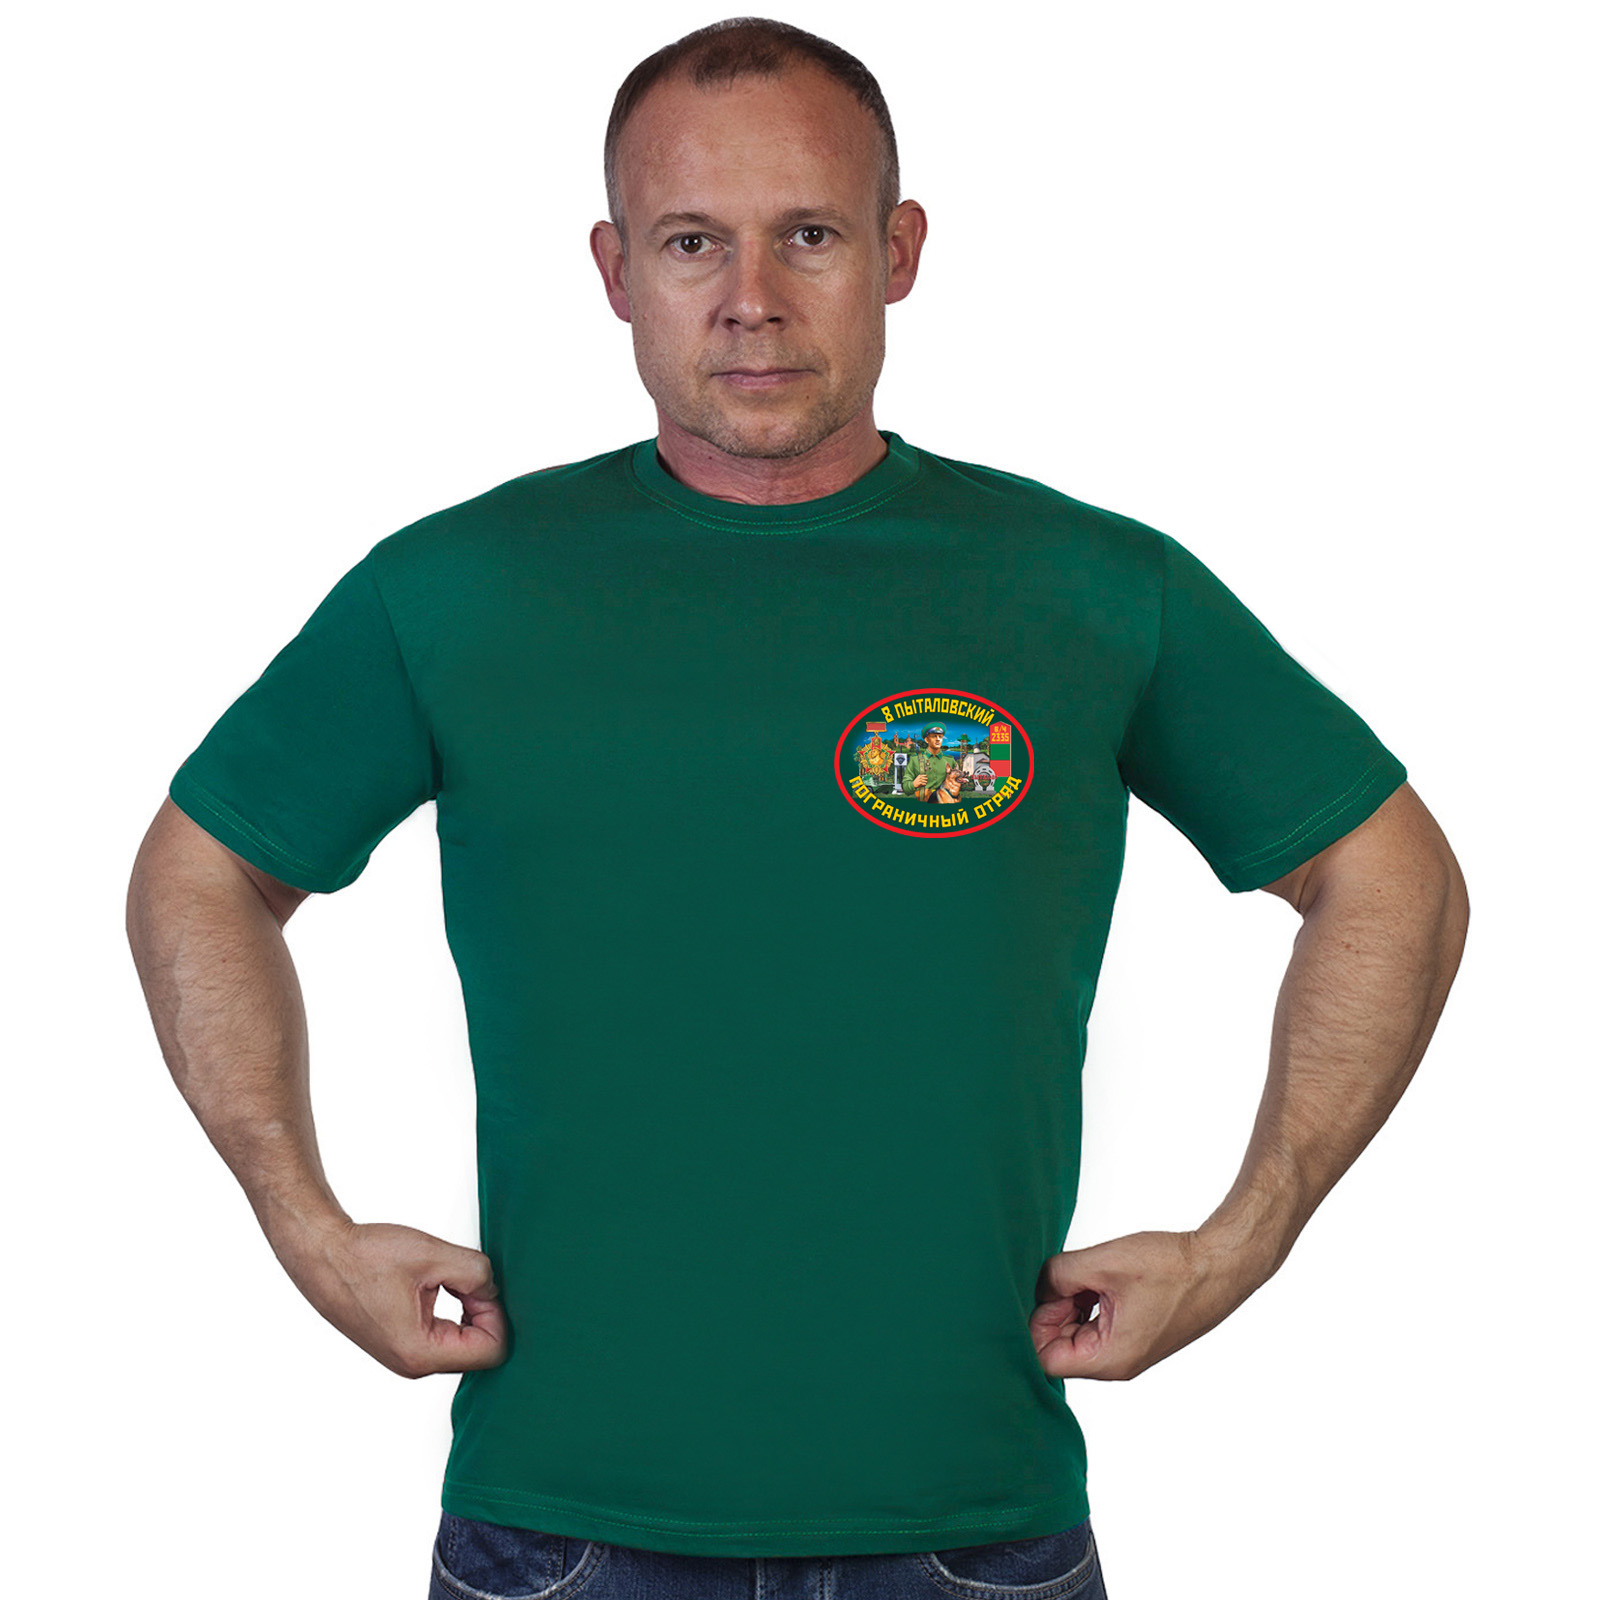 Купить в интернет магазине футболку 8 Пыталовский пограничный отряд